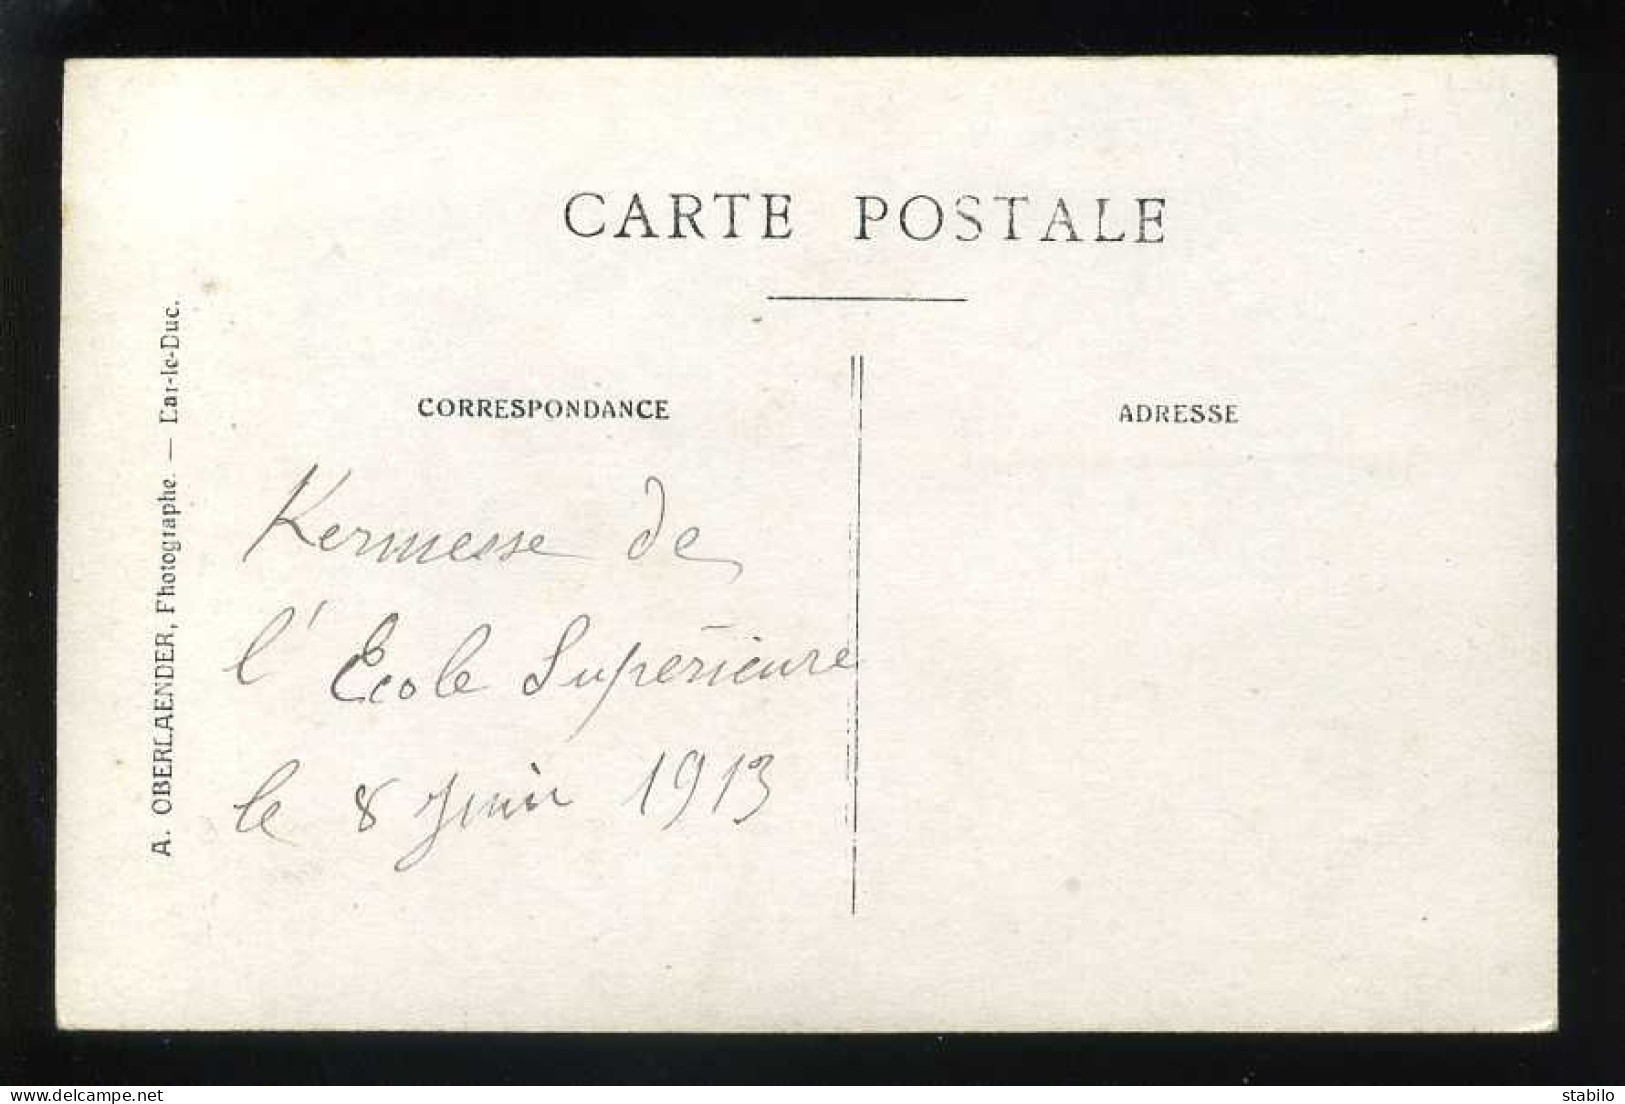 55 - BAR-LE-DUC - KERMESSE DE L'ECOLE SUPERIEURE DU 8 JUIN 1913 - 2 CARTES PHOTOS ORIGINALES D'OBERLAENDER - Bar Le Duc